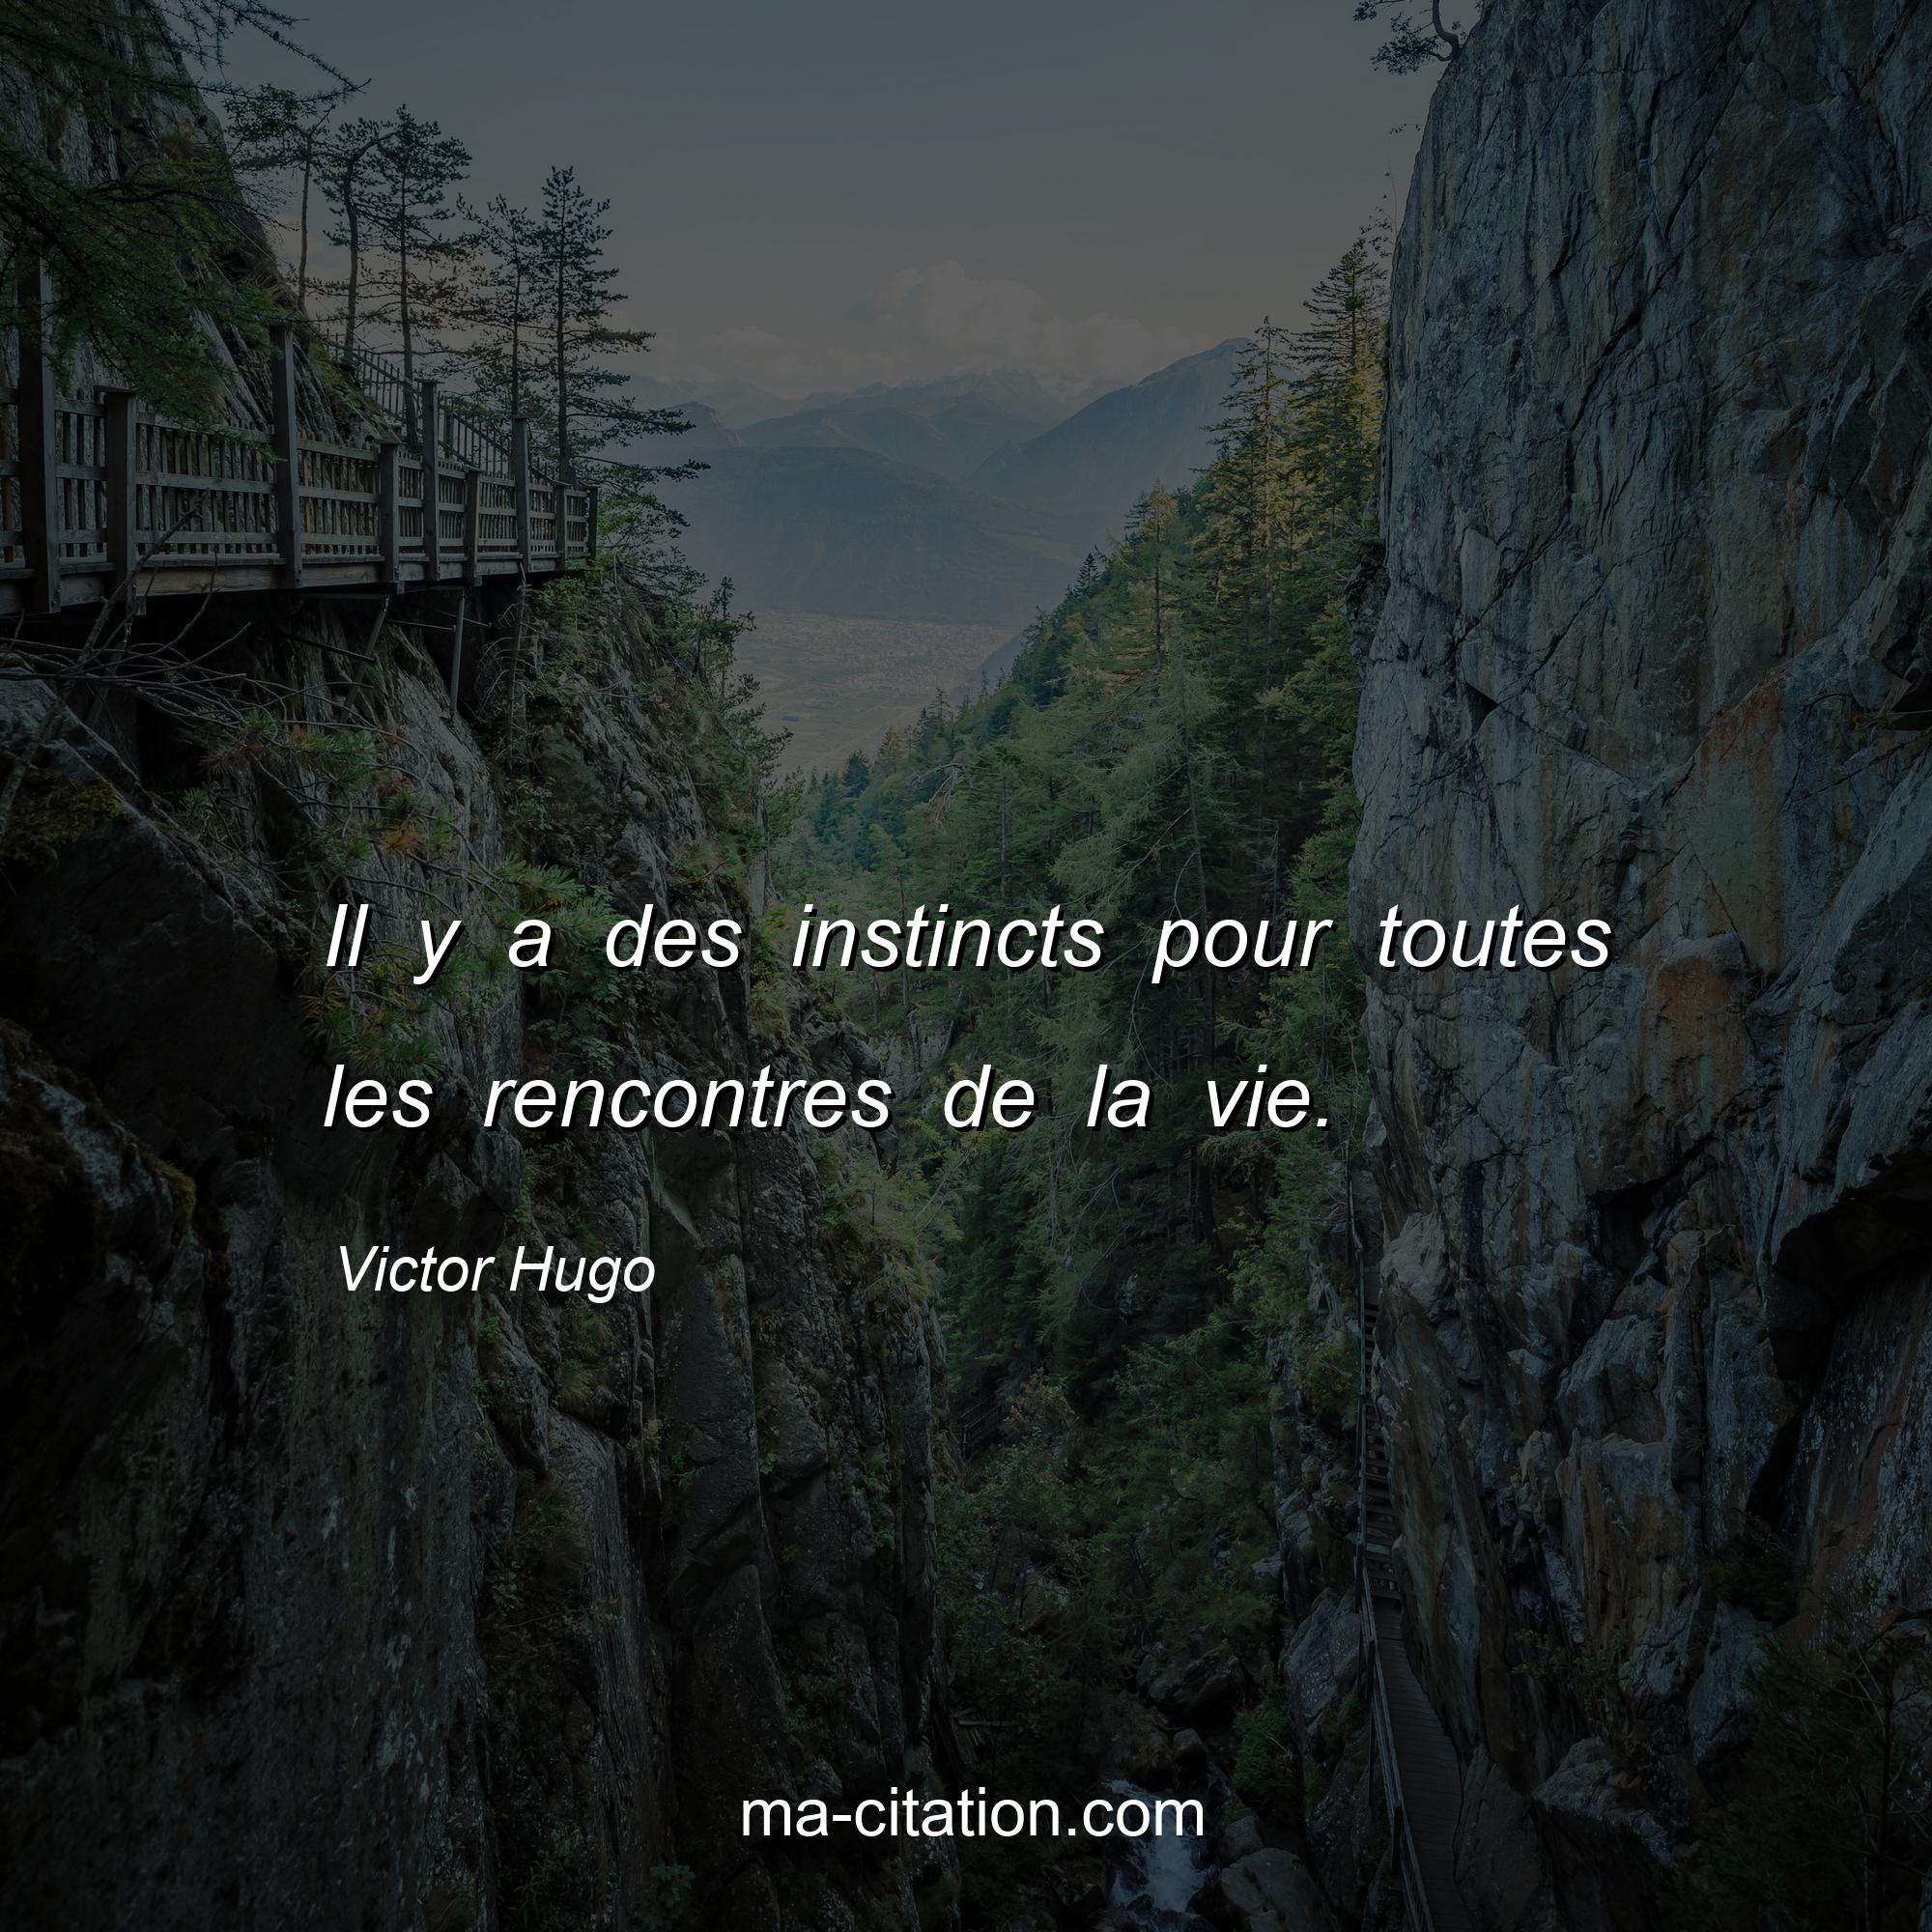 Victor Hugo : Il y a des instincts pour toutes les rencontres de la vie.